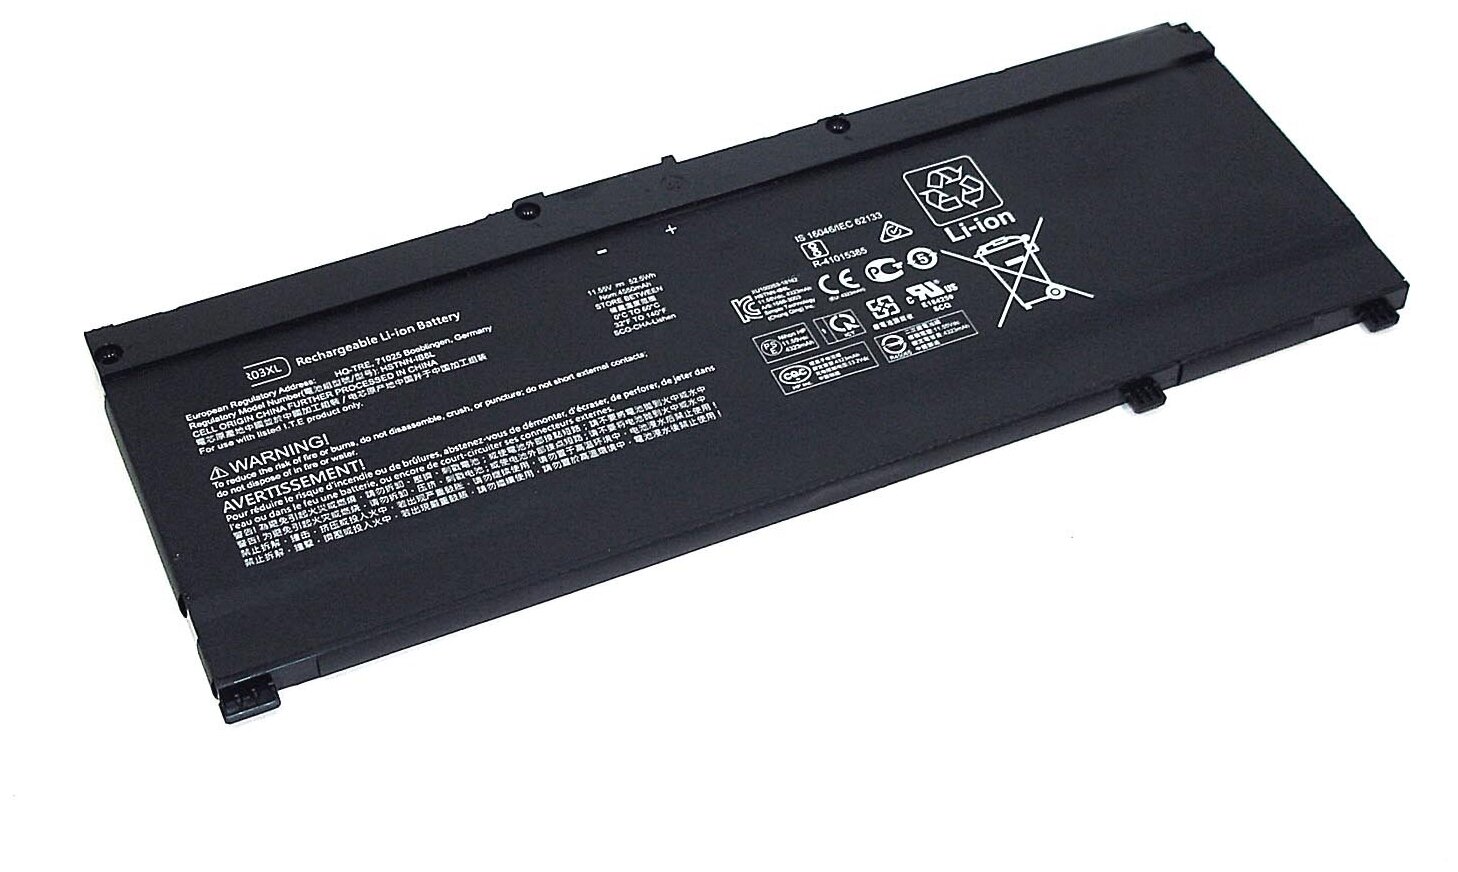 Аккумуляторная батарея для ноутбука HP Pavilion 15-CX (SR03XL) 11.55V 52.5Wh